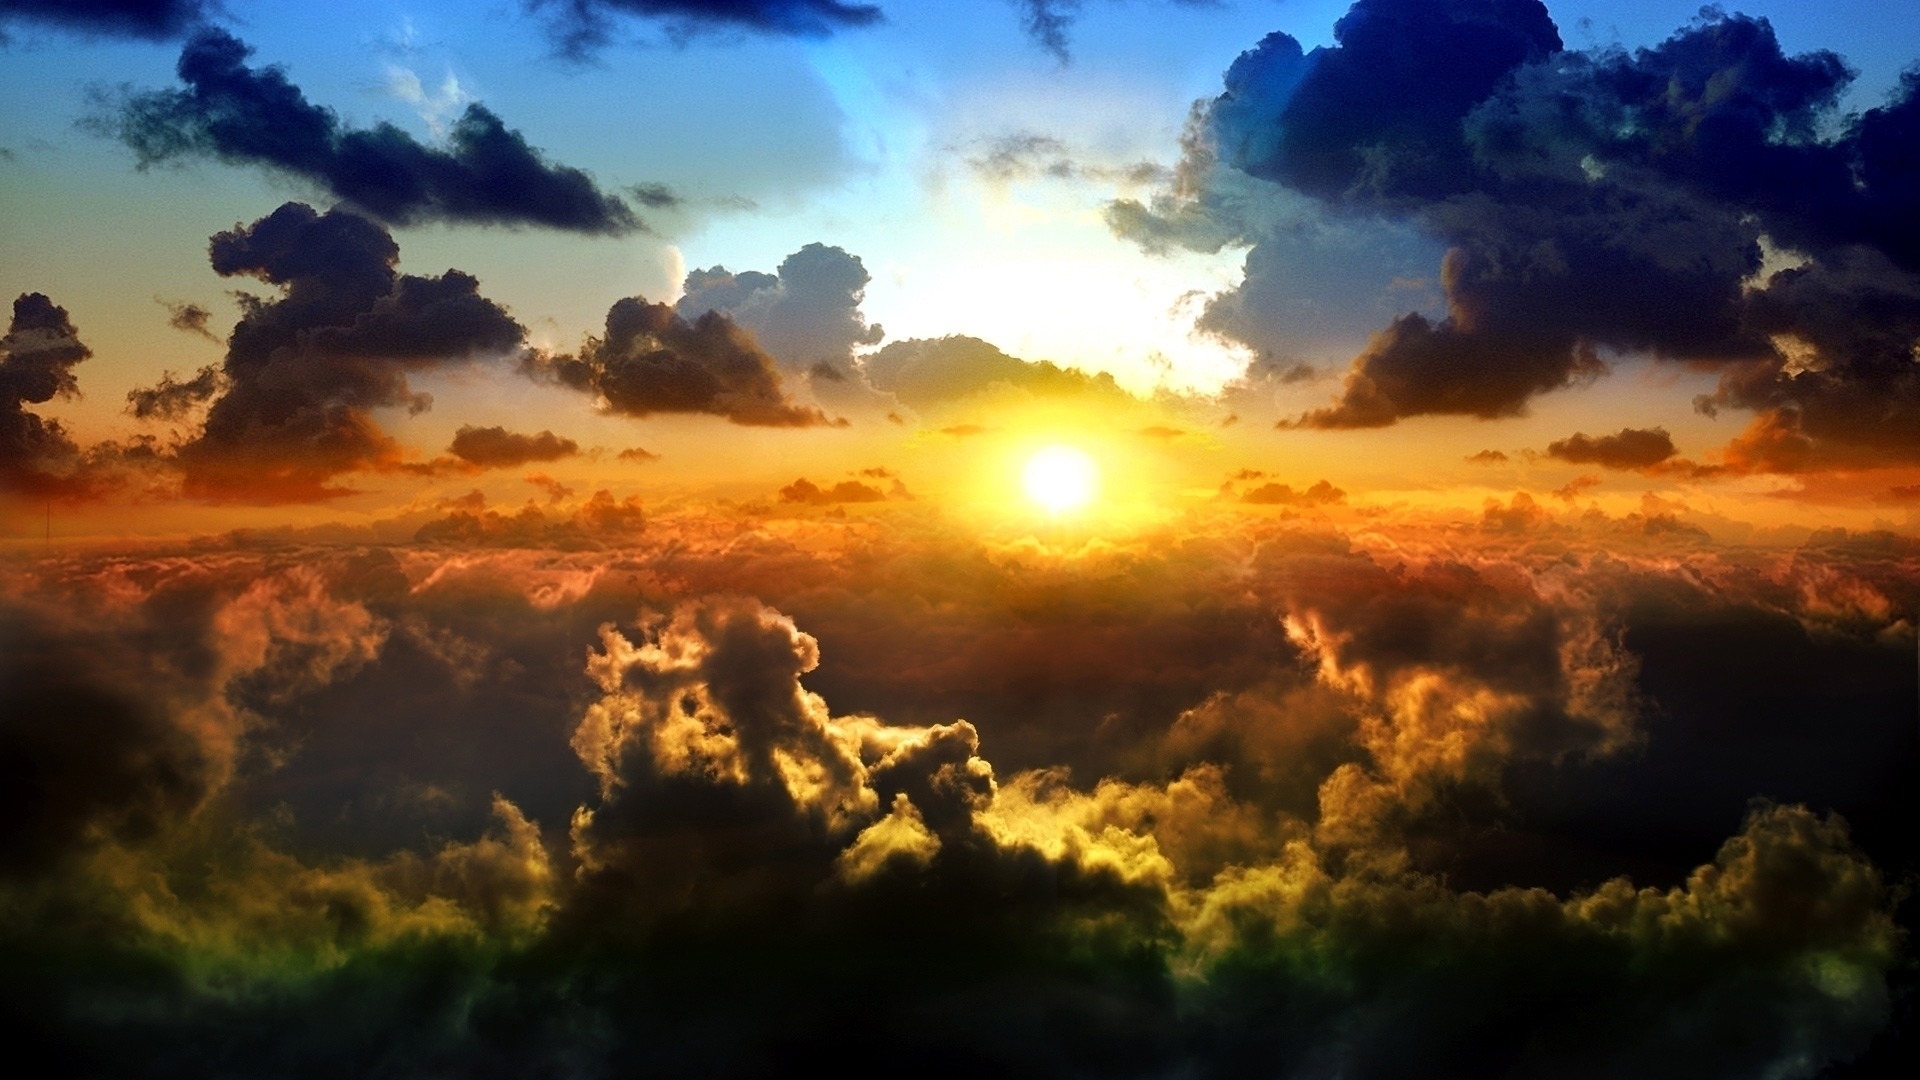 Скачать обои бесплатно Солнце, Облако, Земля/природа картинка на рабочий стол ПК